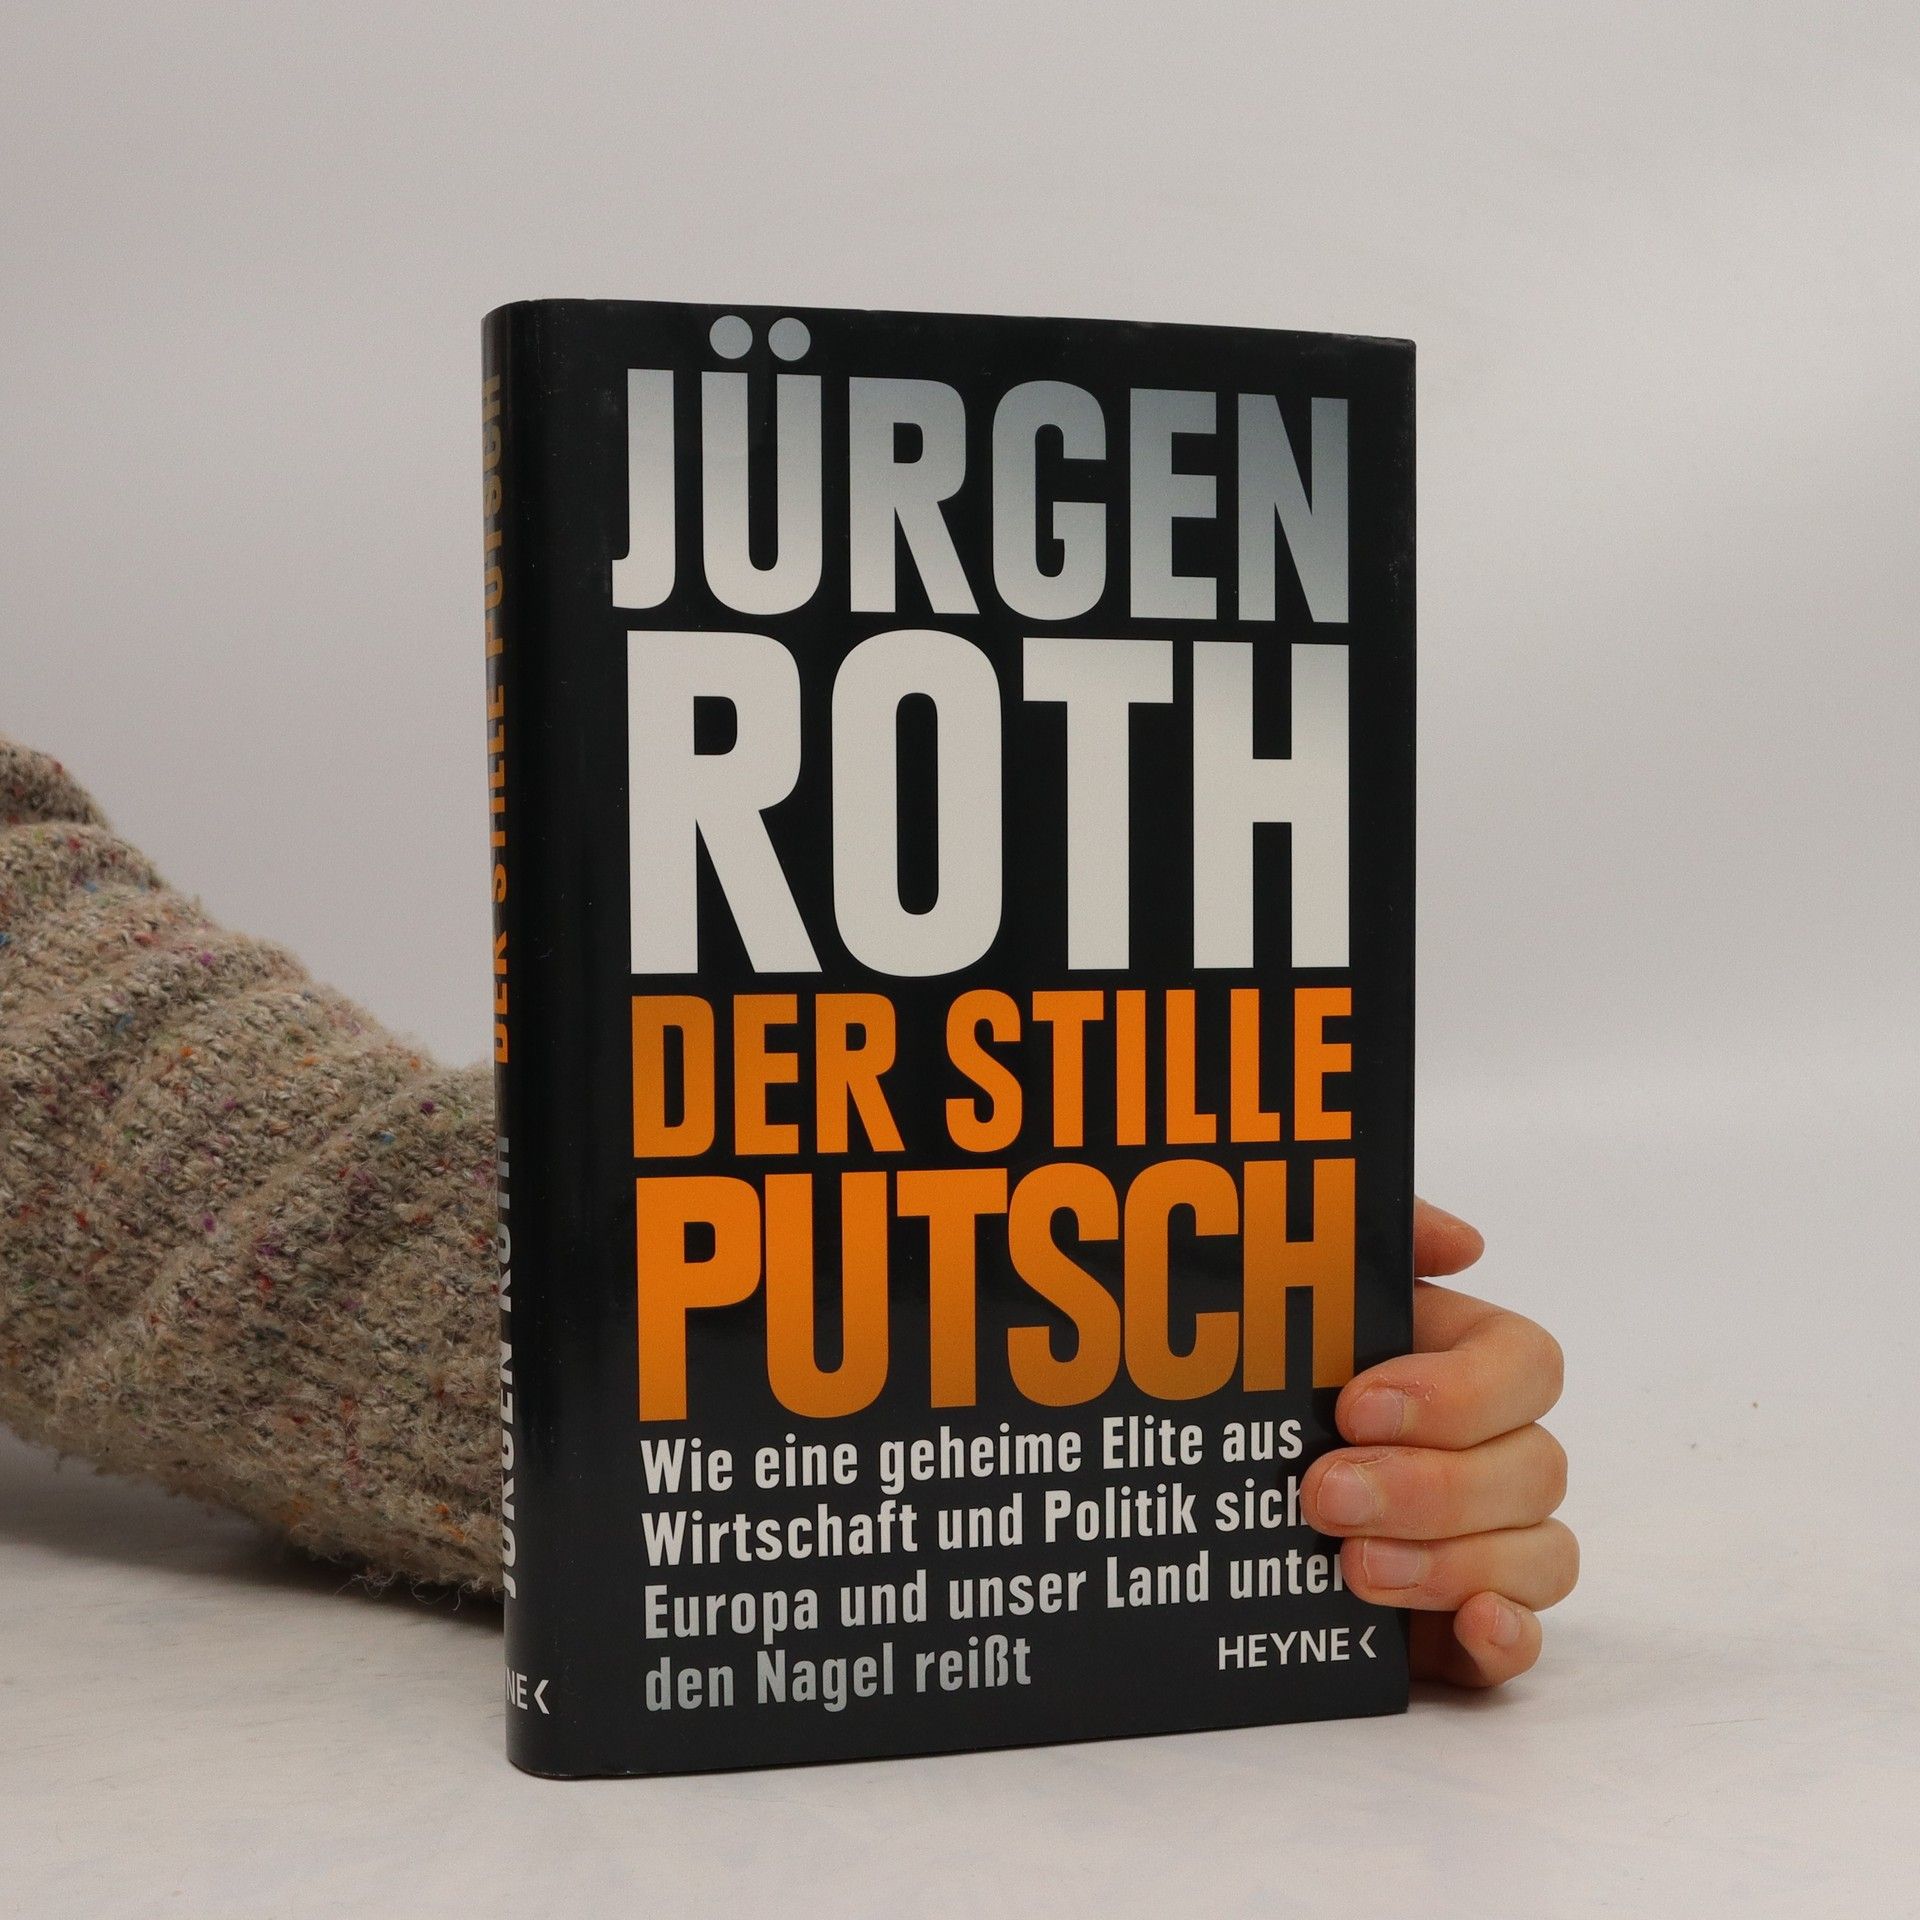 Der stille Putsch - Ju rgen Roth